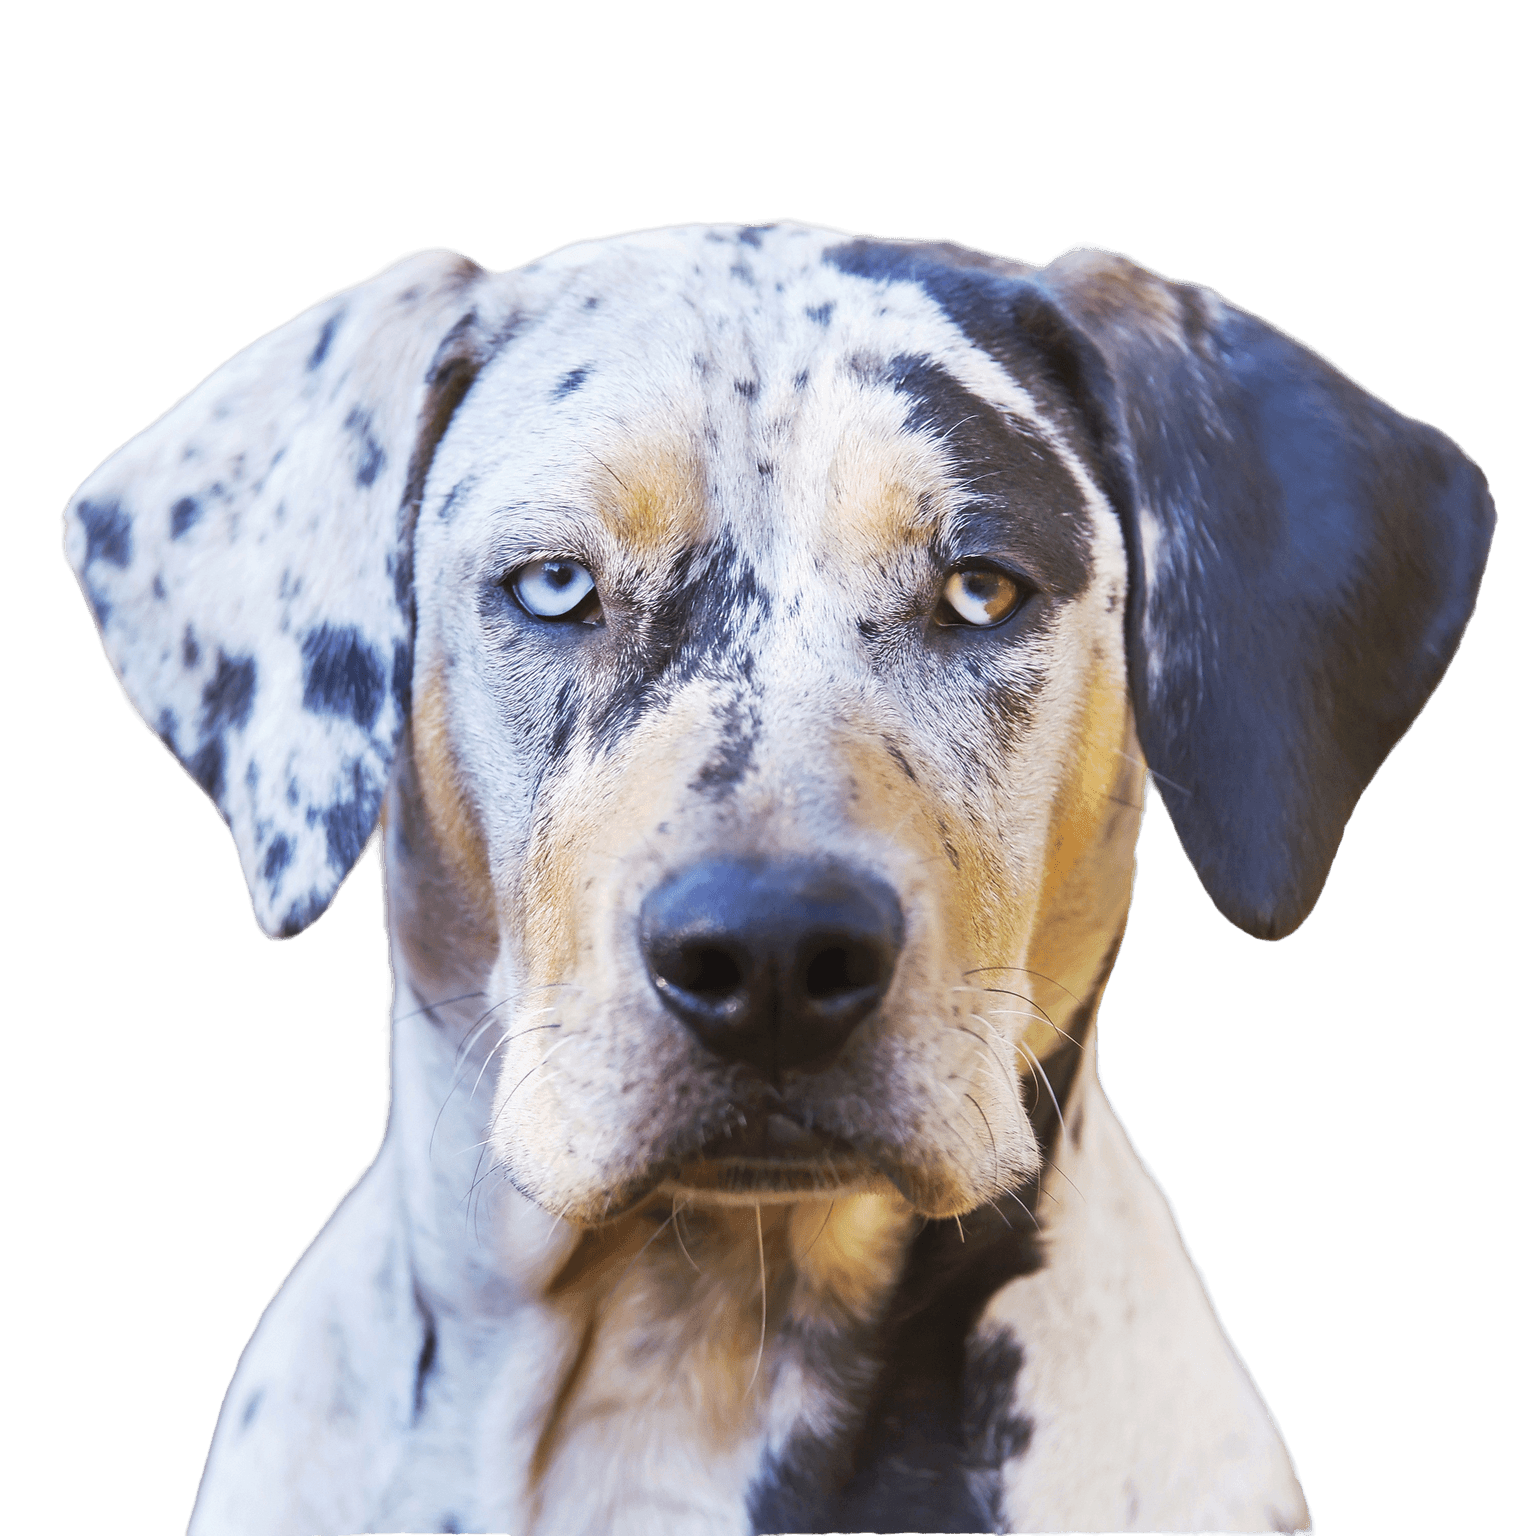 Louisana Catahoula Profil du chien Image Description de la race du chien de couleur merle